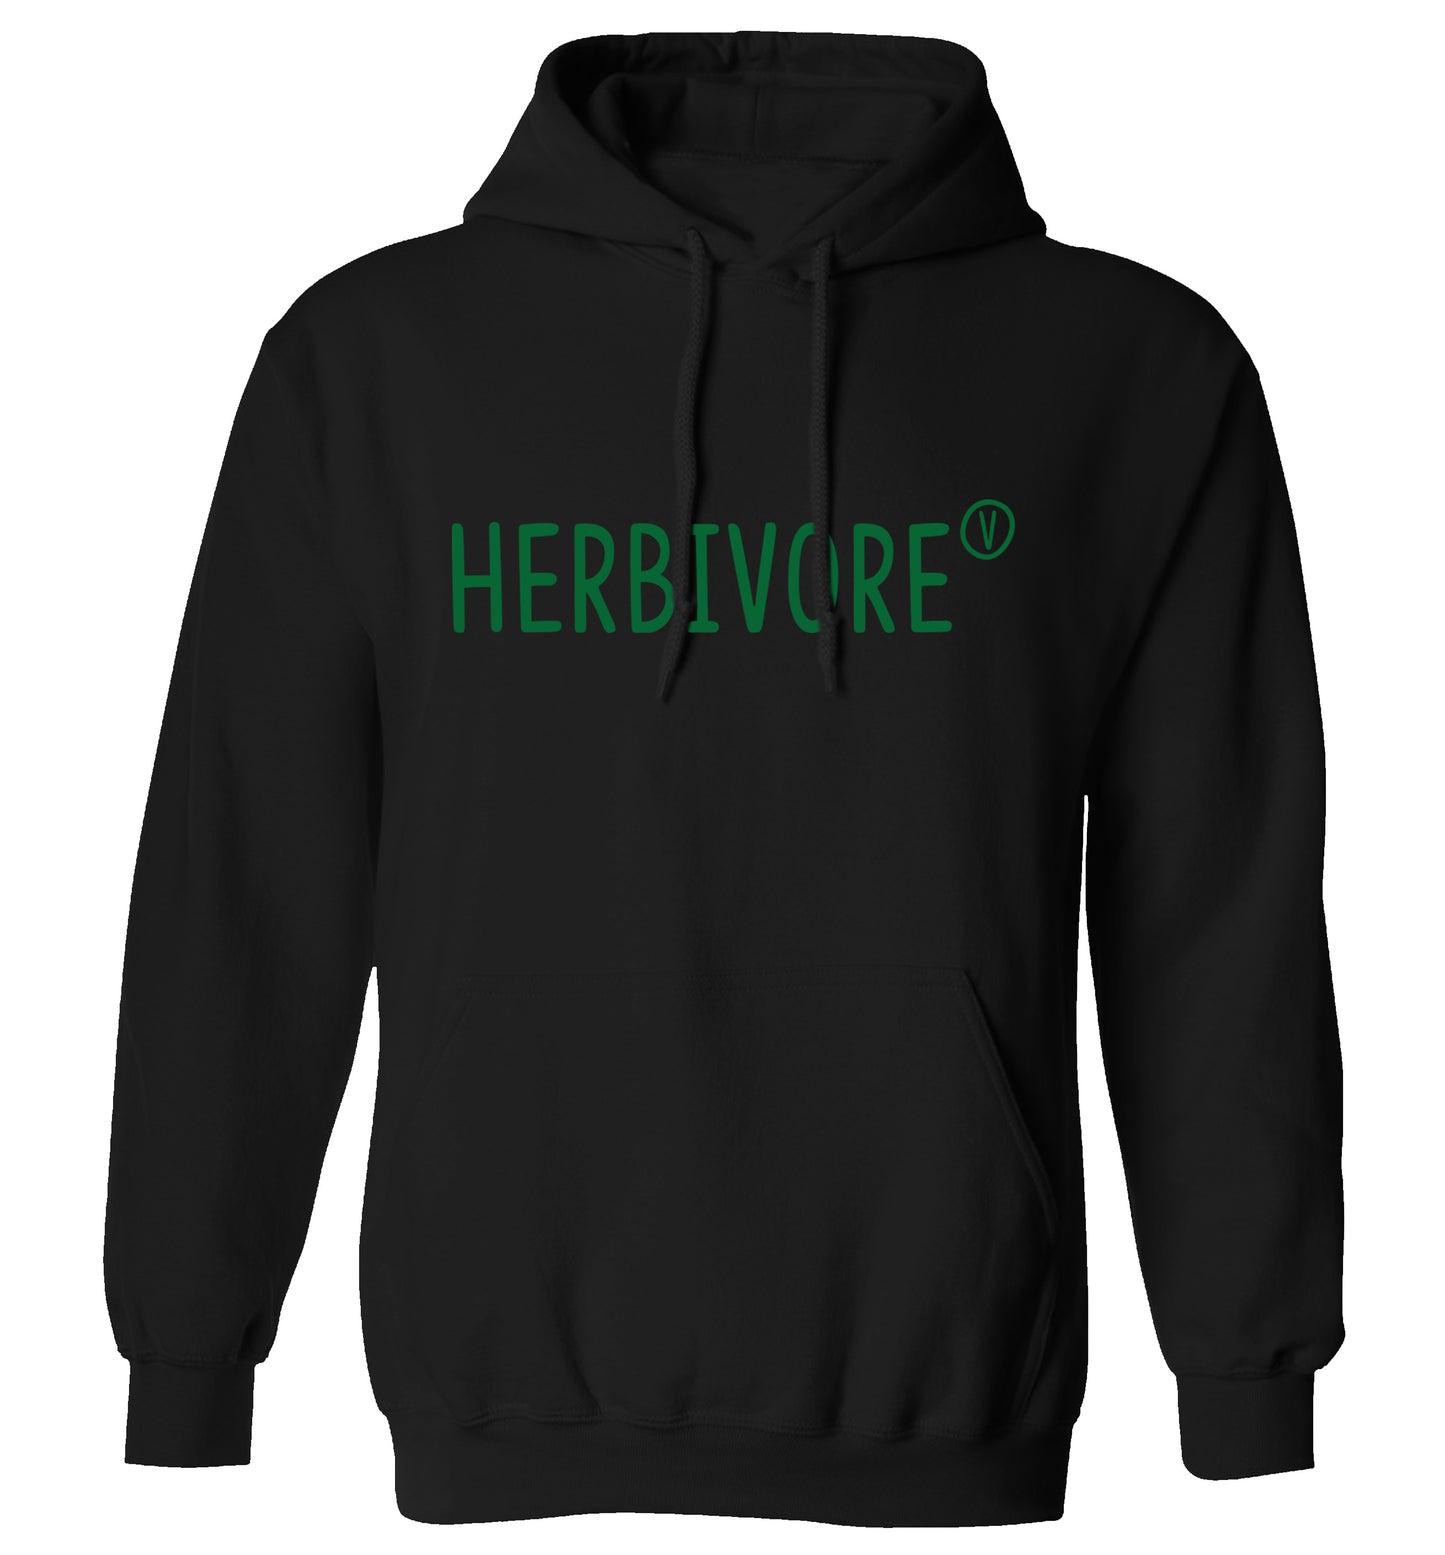 Herbivore adults unisex black hoodie 2XL